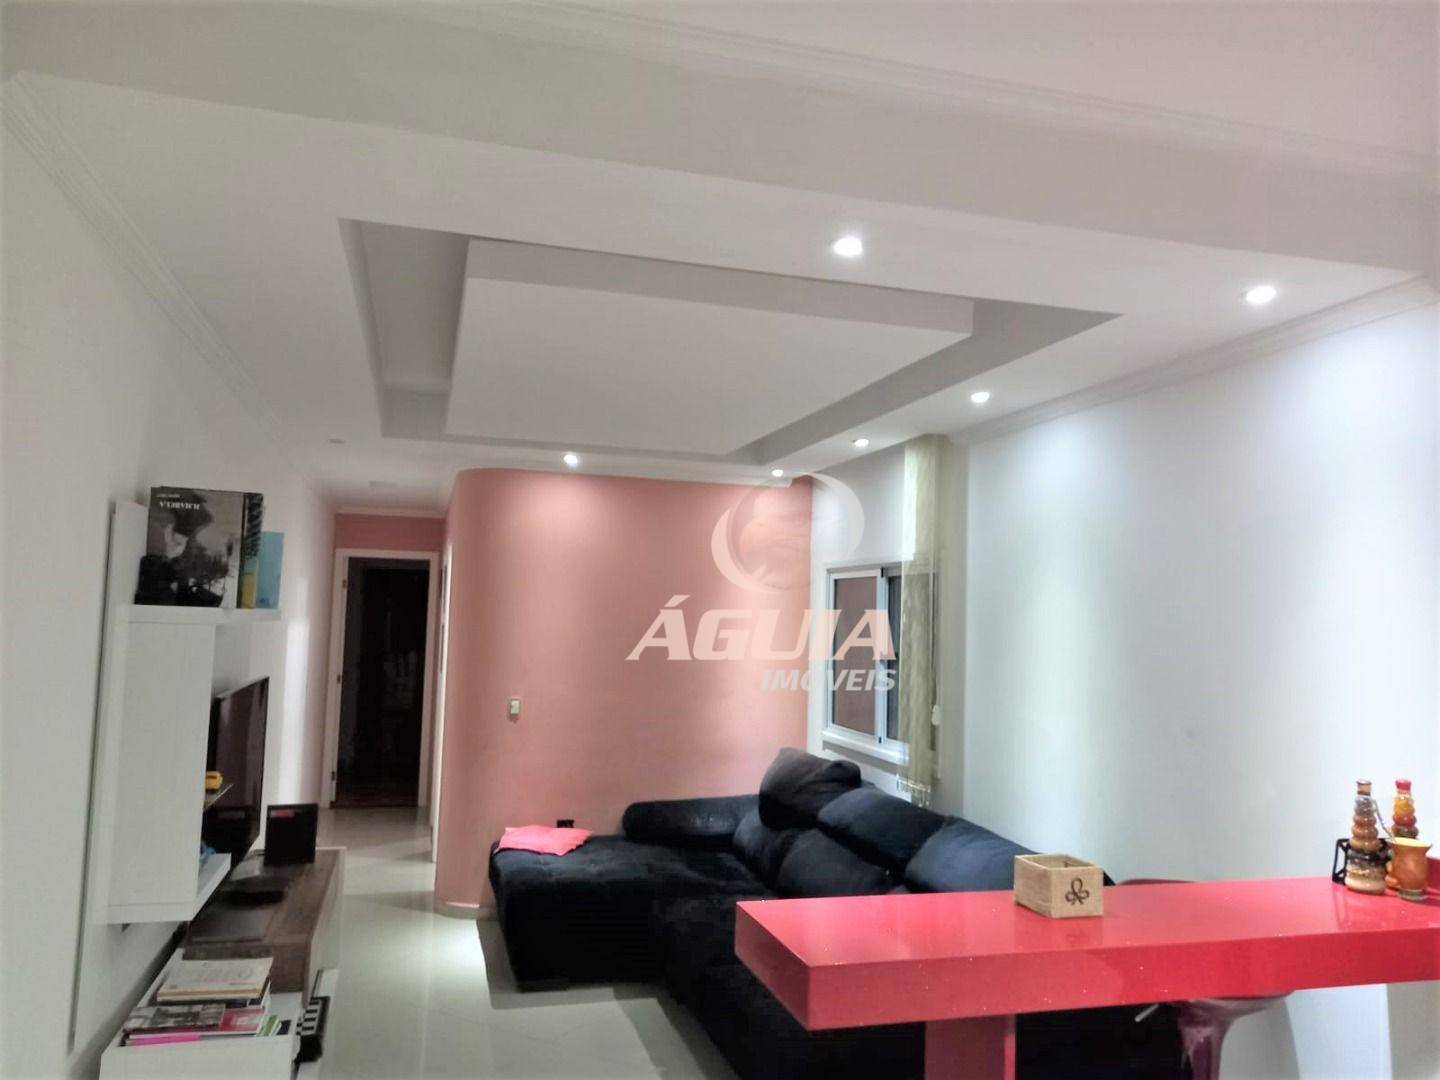 Cobertura com 2 dormitórios à venda, 70 m² + 70 m² por R$ 585.000 - Vila Pires - Santo André/SP